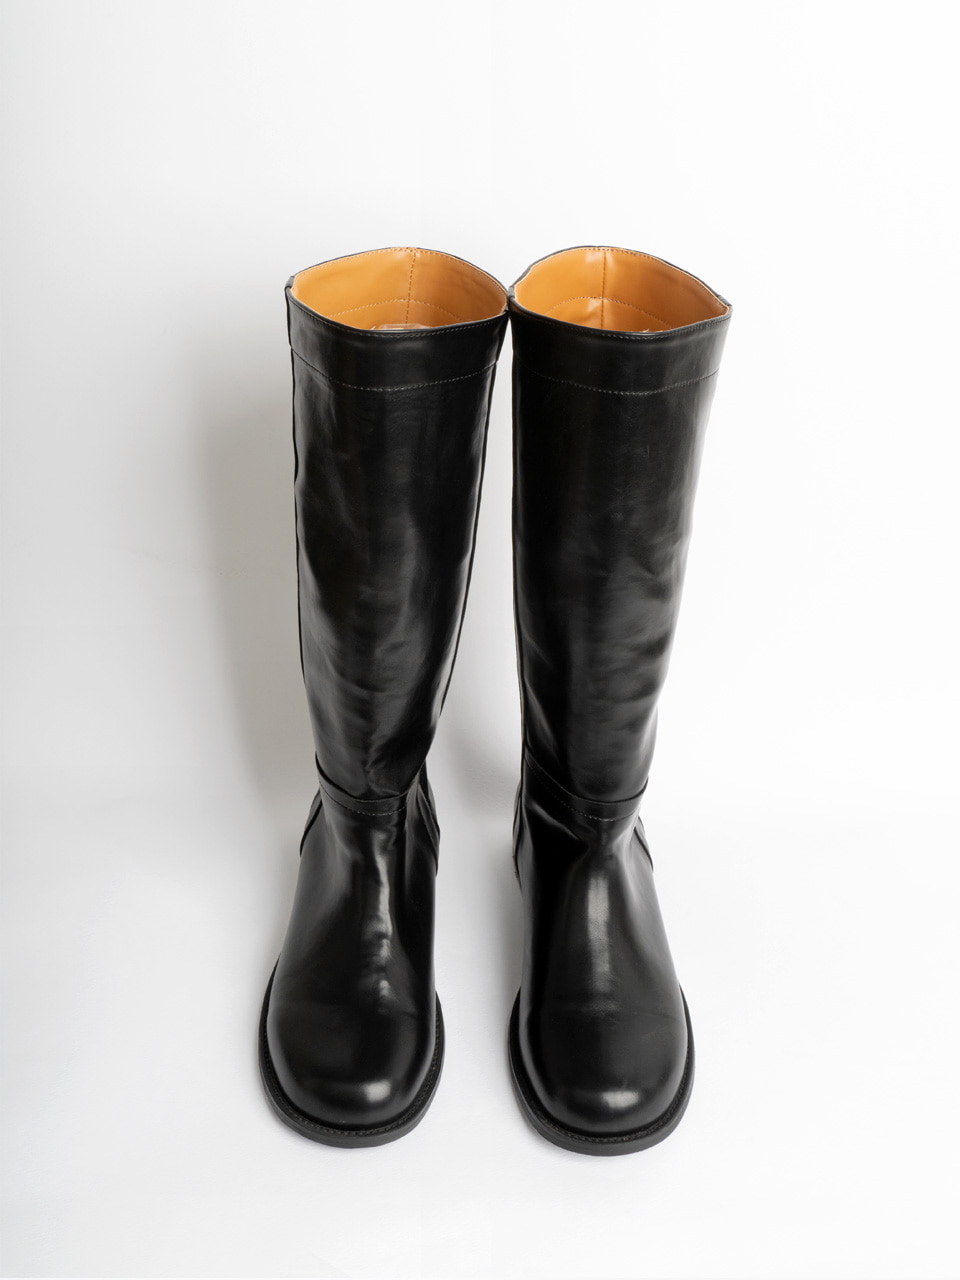 URAGO Basic Round Long Boots